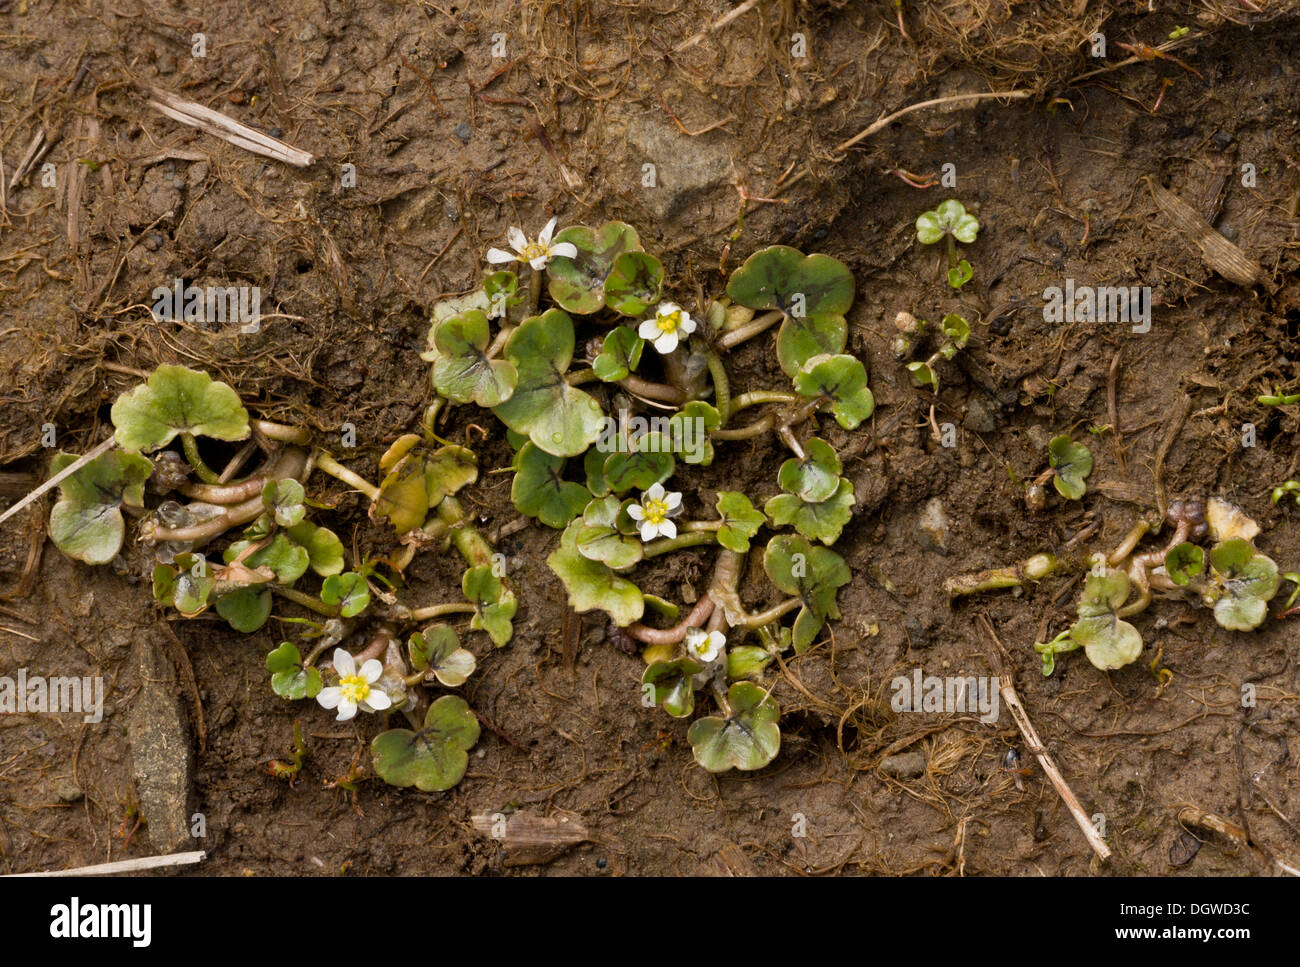 Ivy-leaved Crowfoot, Ranunculus hederaceus flowering in wet mud. Stock Photo